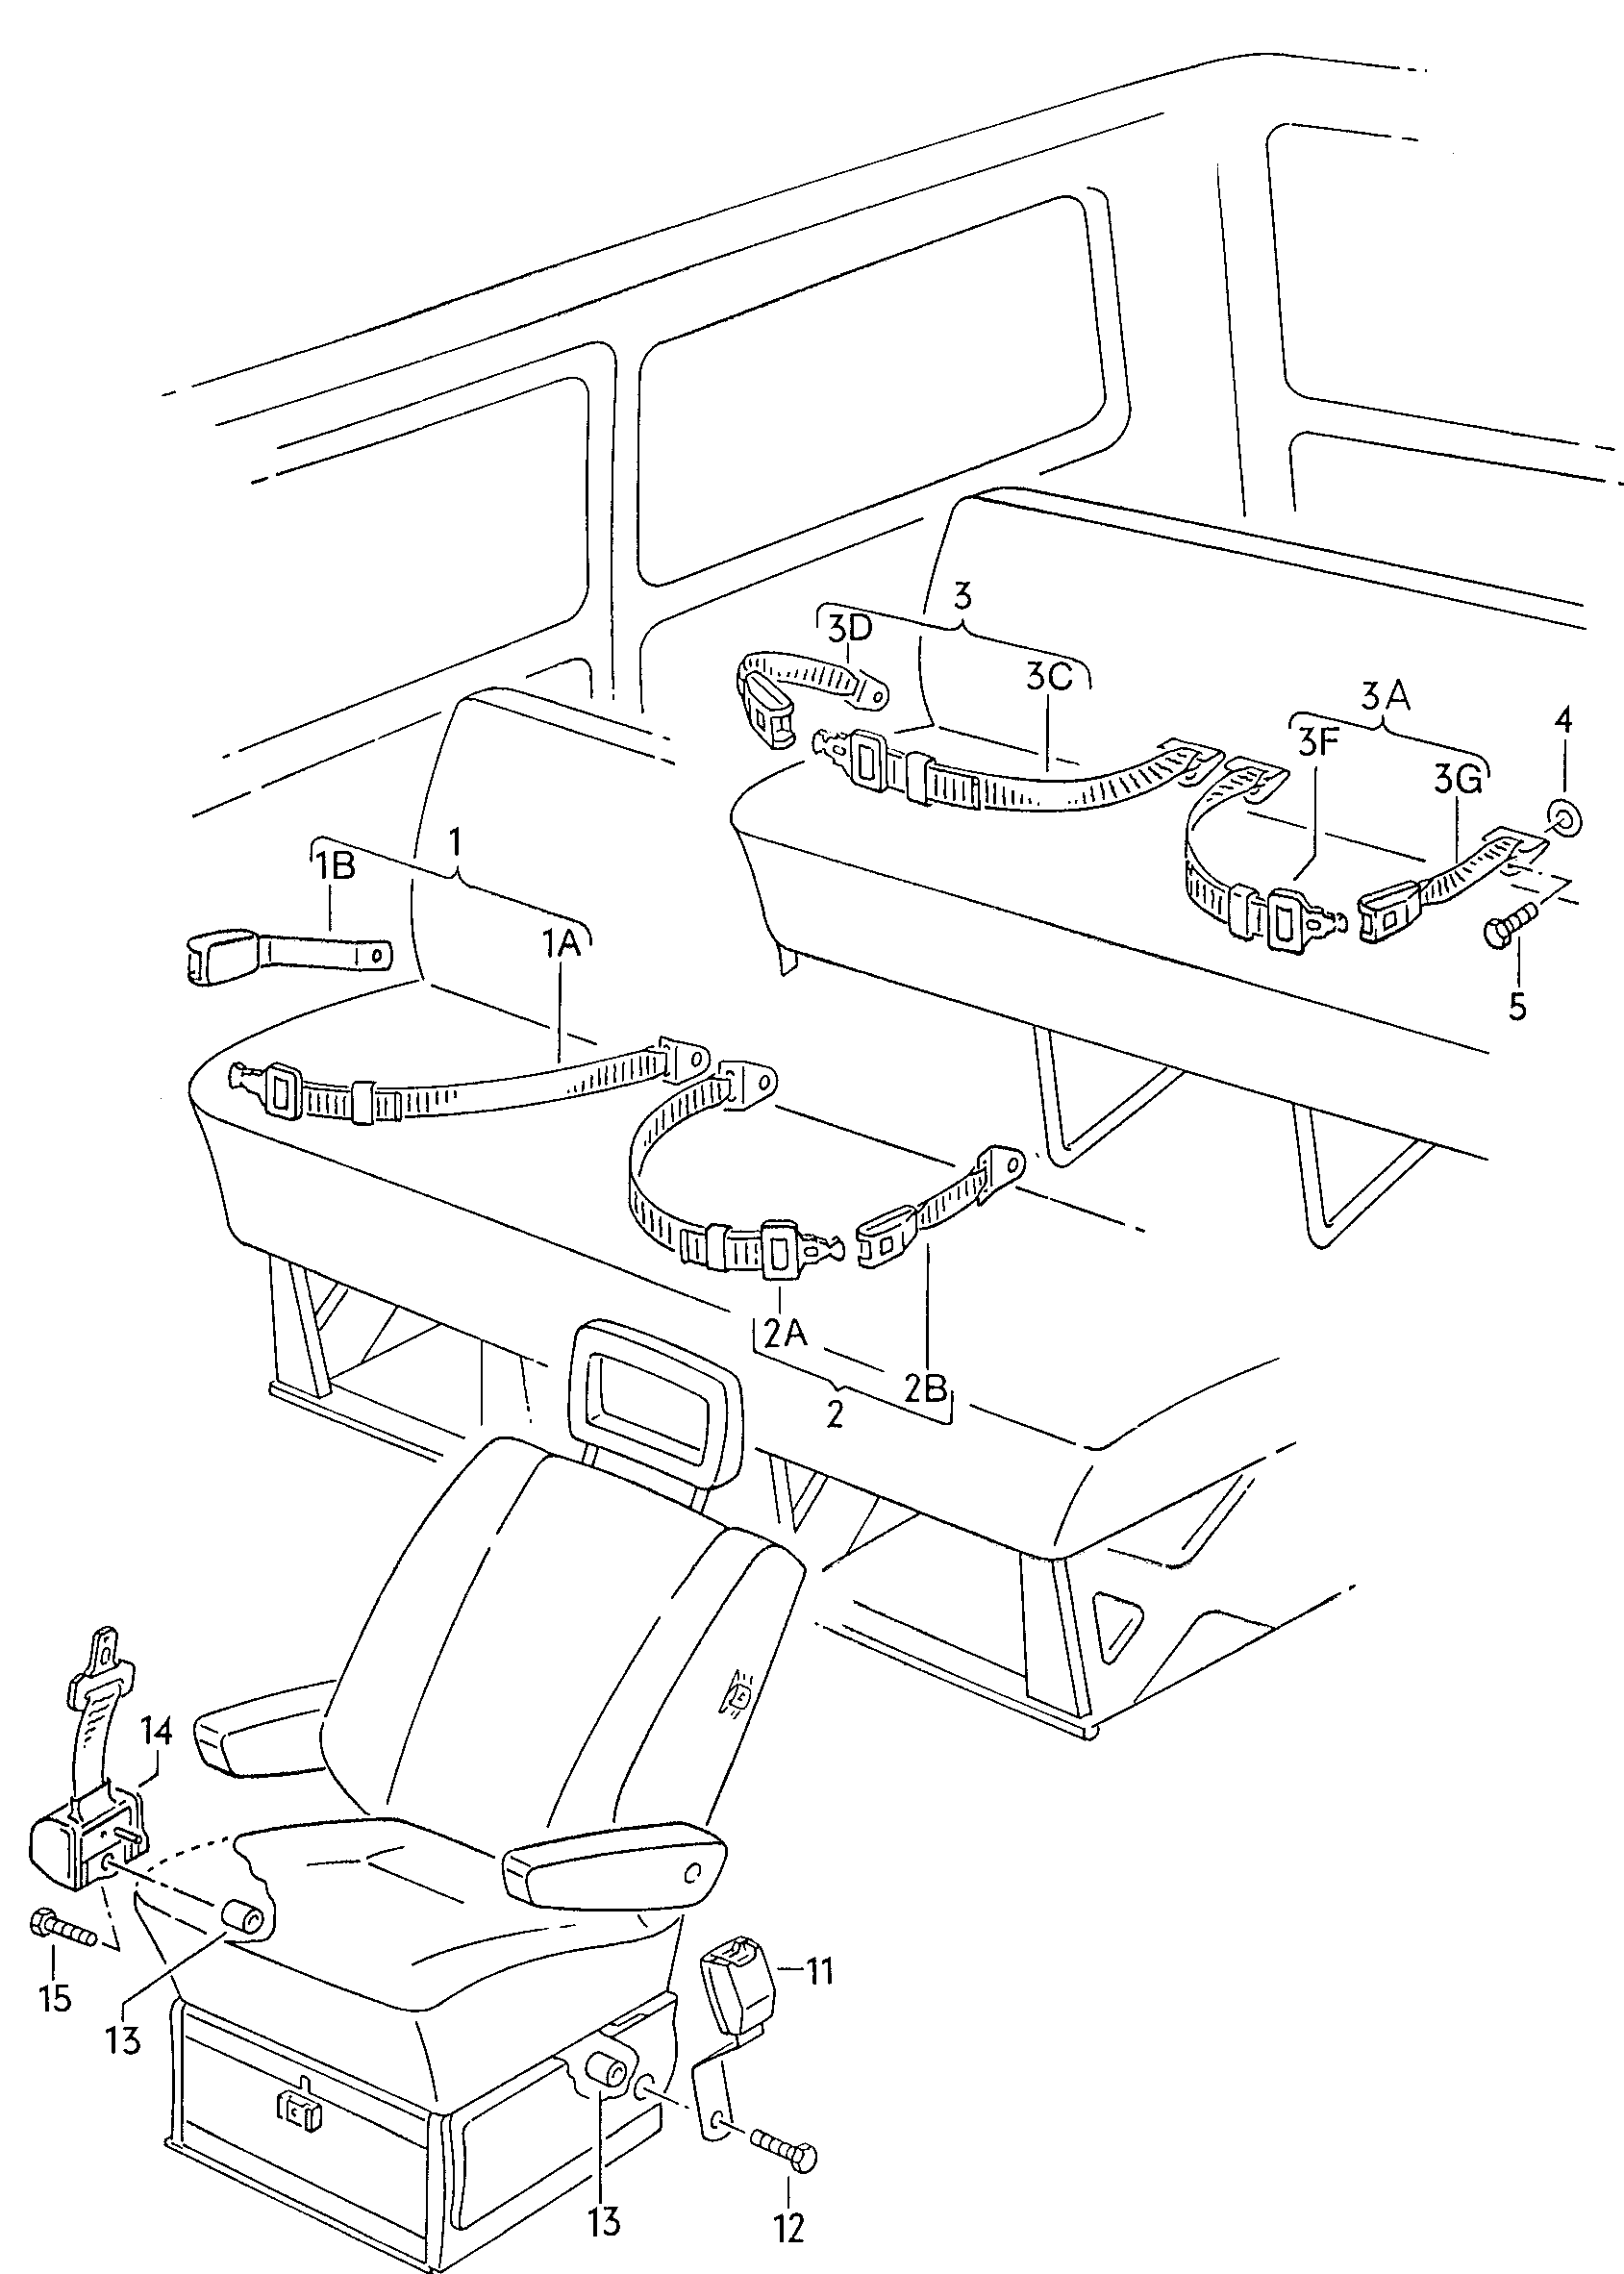 heupgordel in passagiers-
ruimte - Typ 2/syncro(T2)  